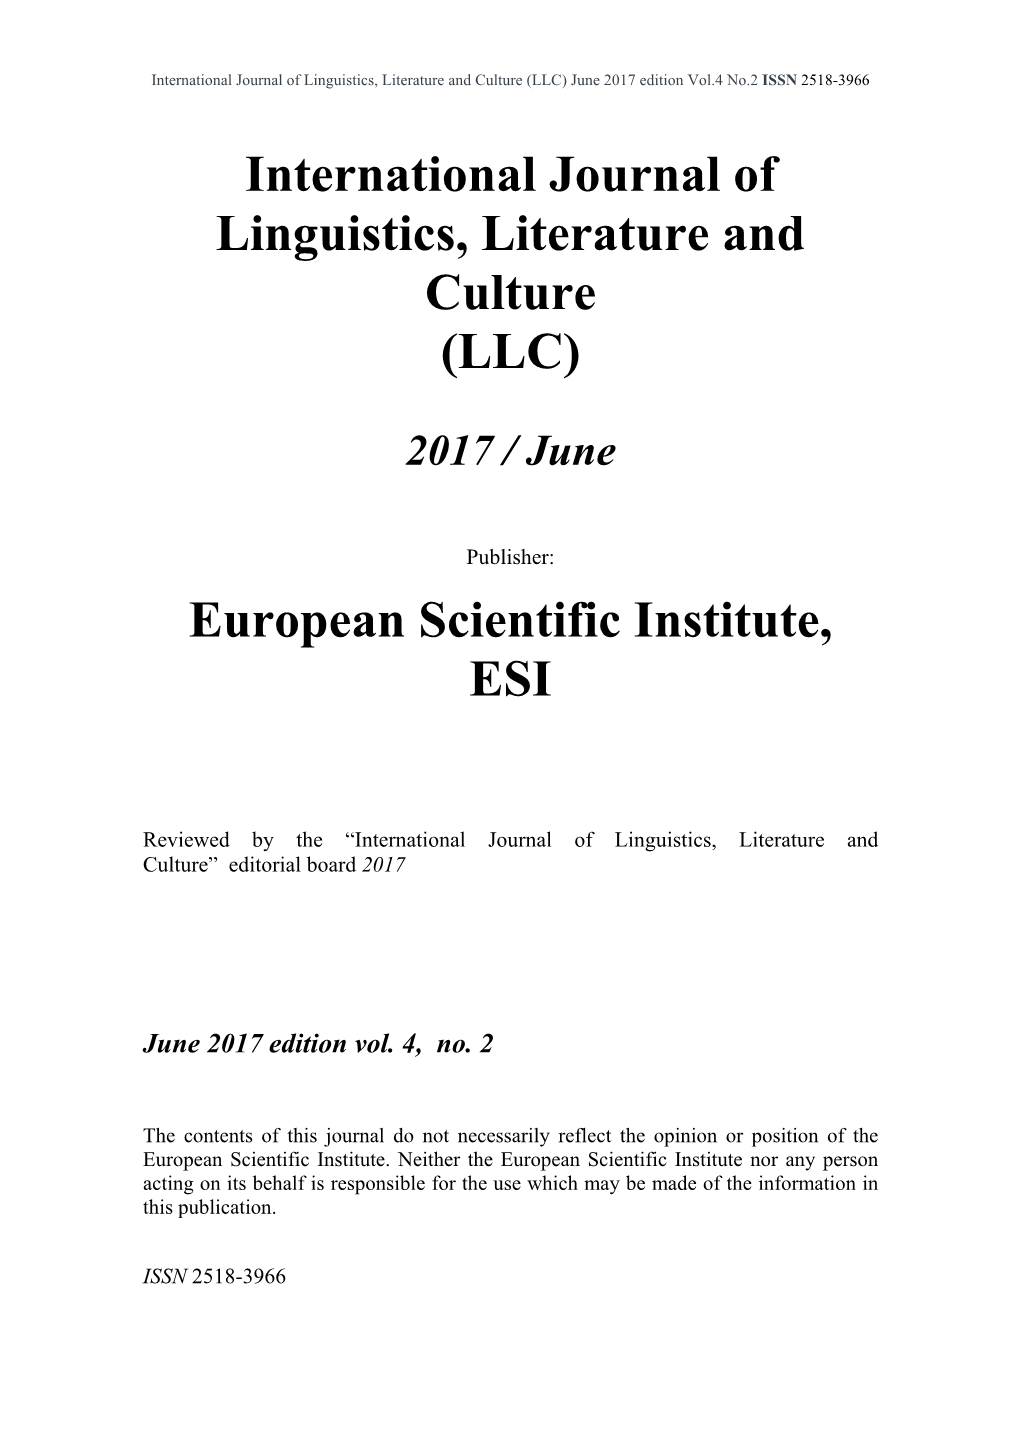 Vol.4 No.2 ISSN 2518-3966